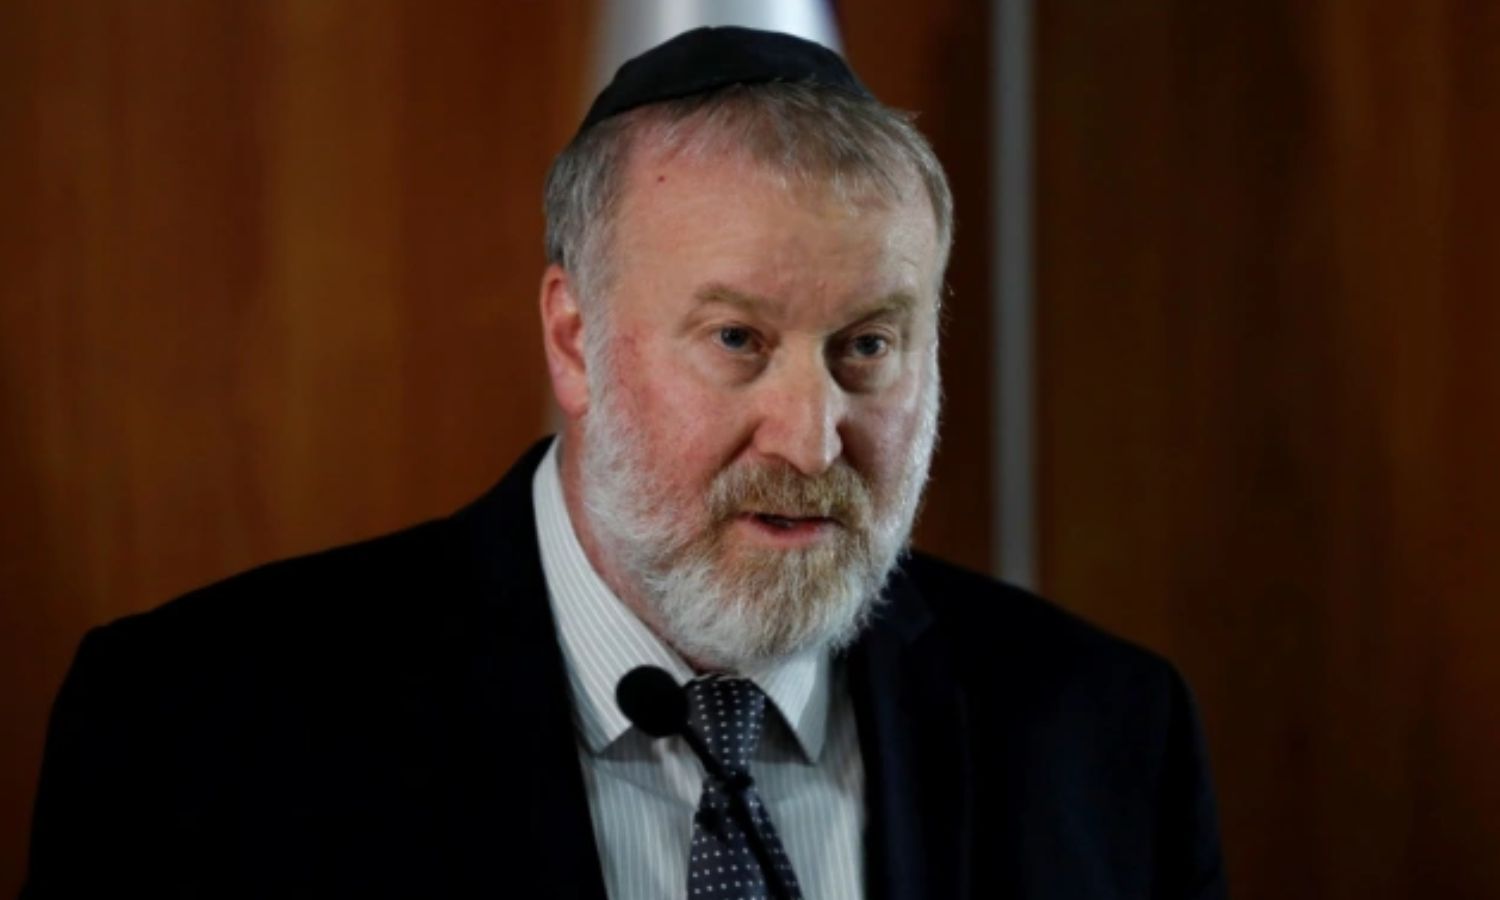 المدعي العام الإسرائيلي للقضايا الثلاثة ضد نتنياهو، أفيخاي ماندلبليت- تشرين الثاني 2019 (رويترز)